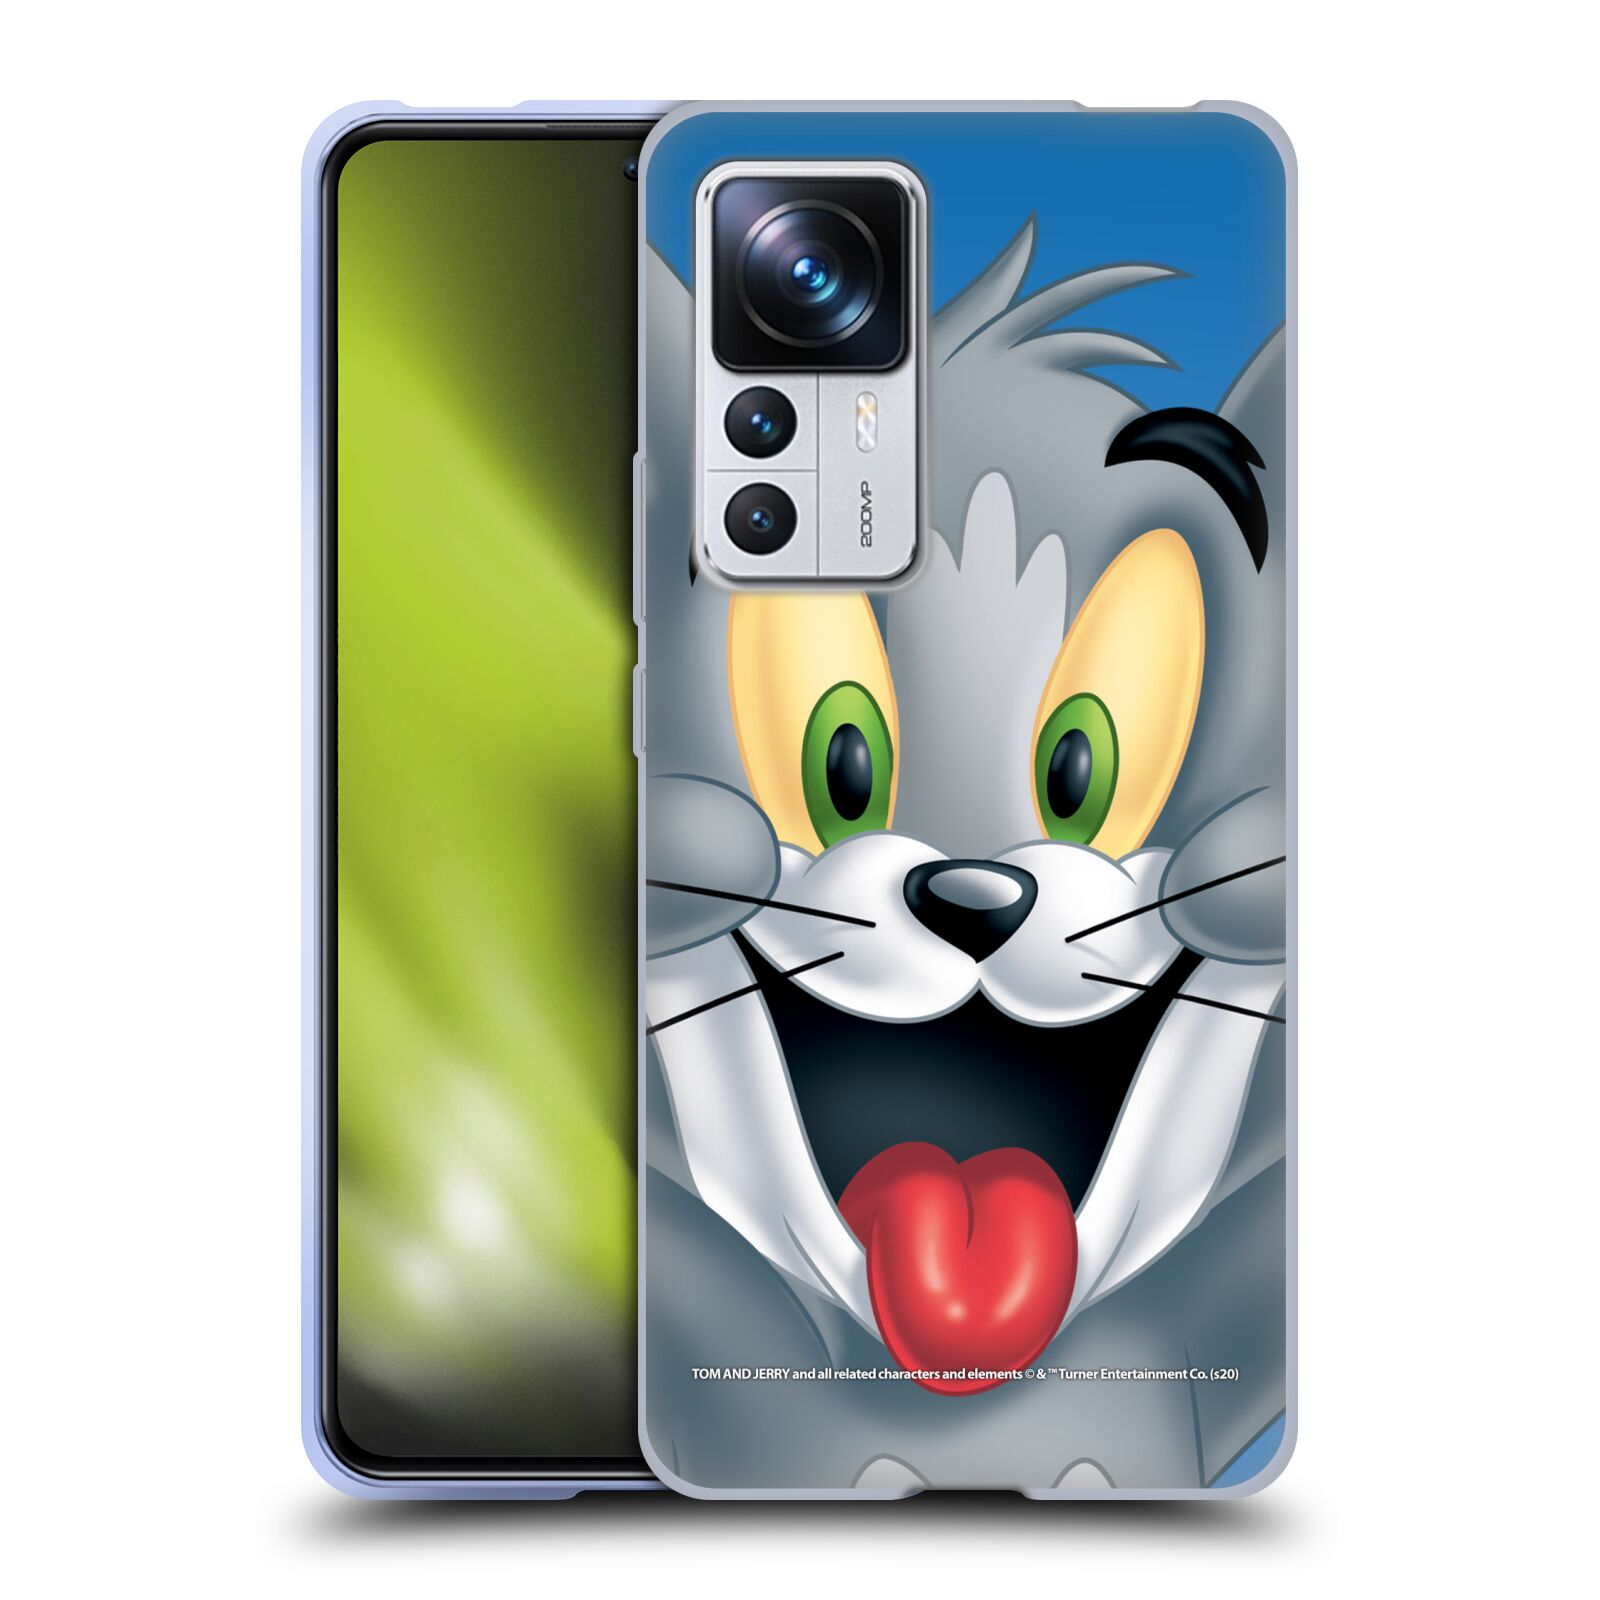 Silikonové pouzdro na mobil Xiaomi 12T / 12T Pro - Tom and Jerry - Tom (Silikonový kryt, obal, pouzdro na mobilní telefon Xiaomi 12T / 12T Pro s licencovaným motivem Tom and Jerry - Tom)